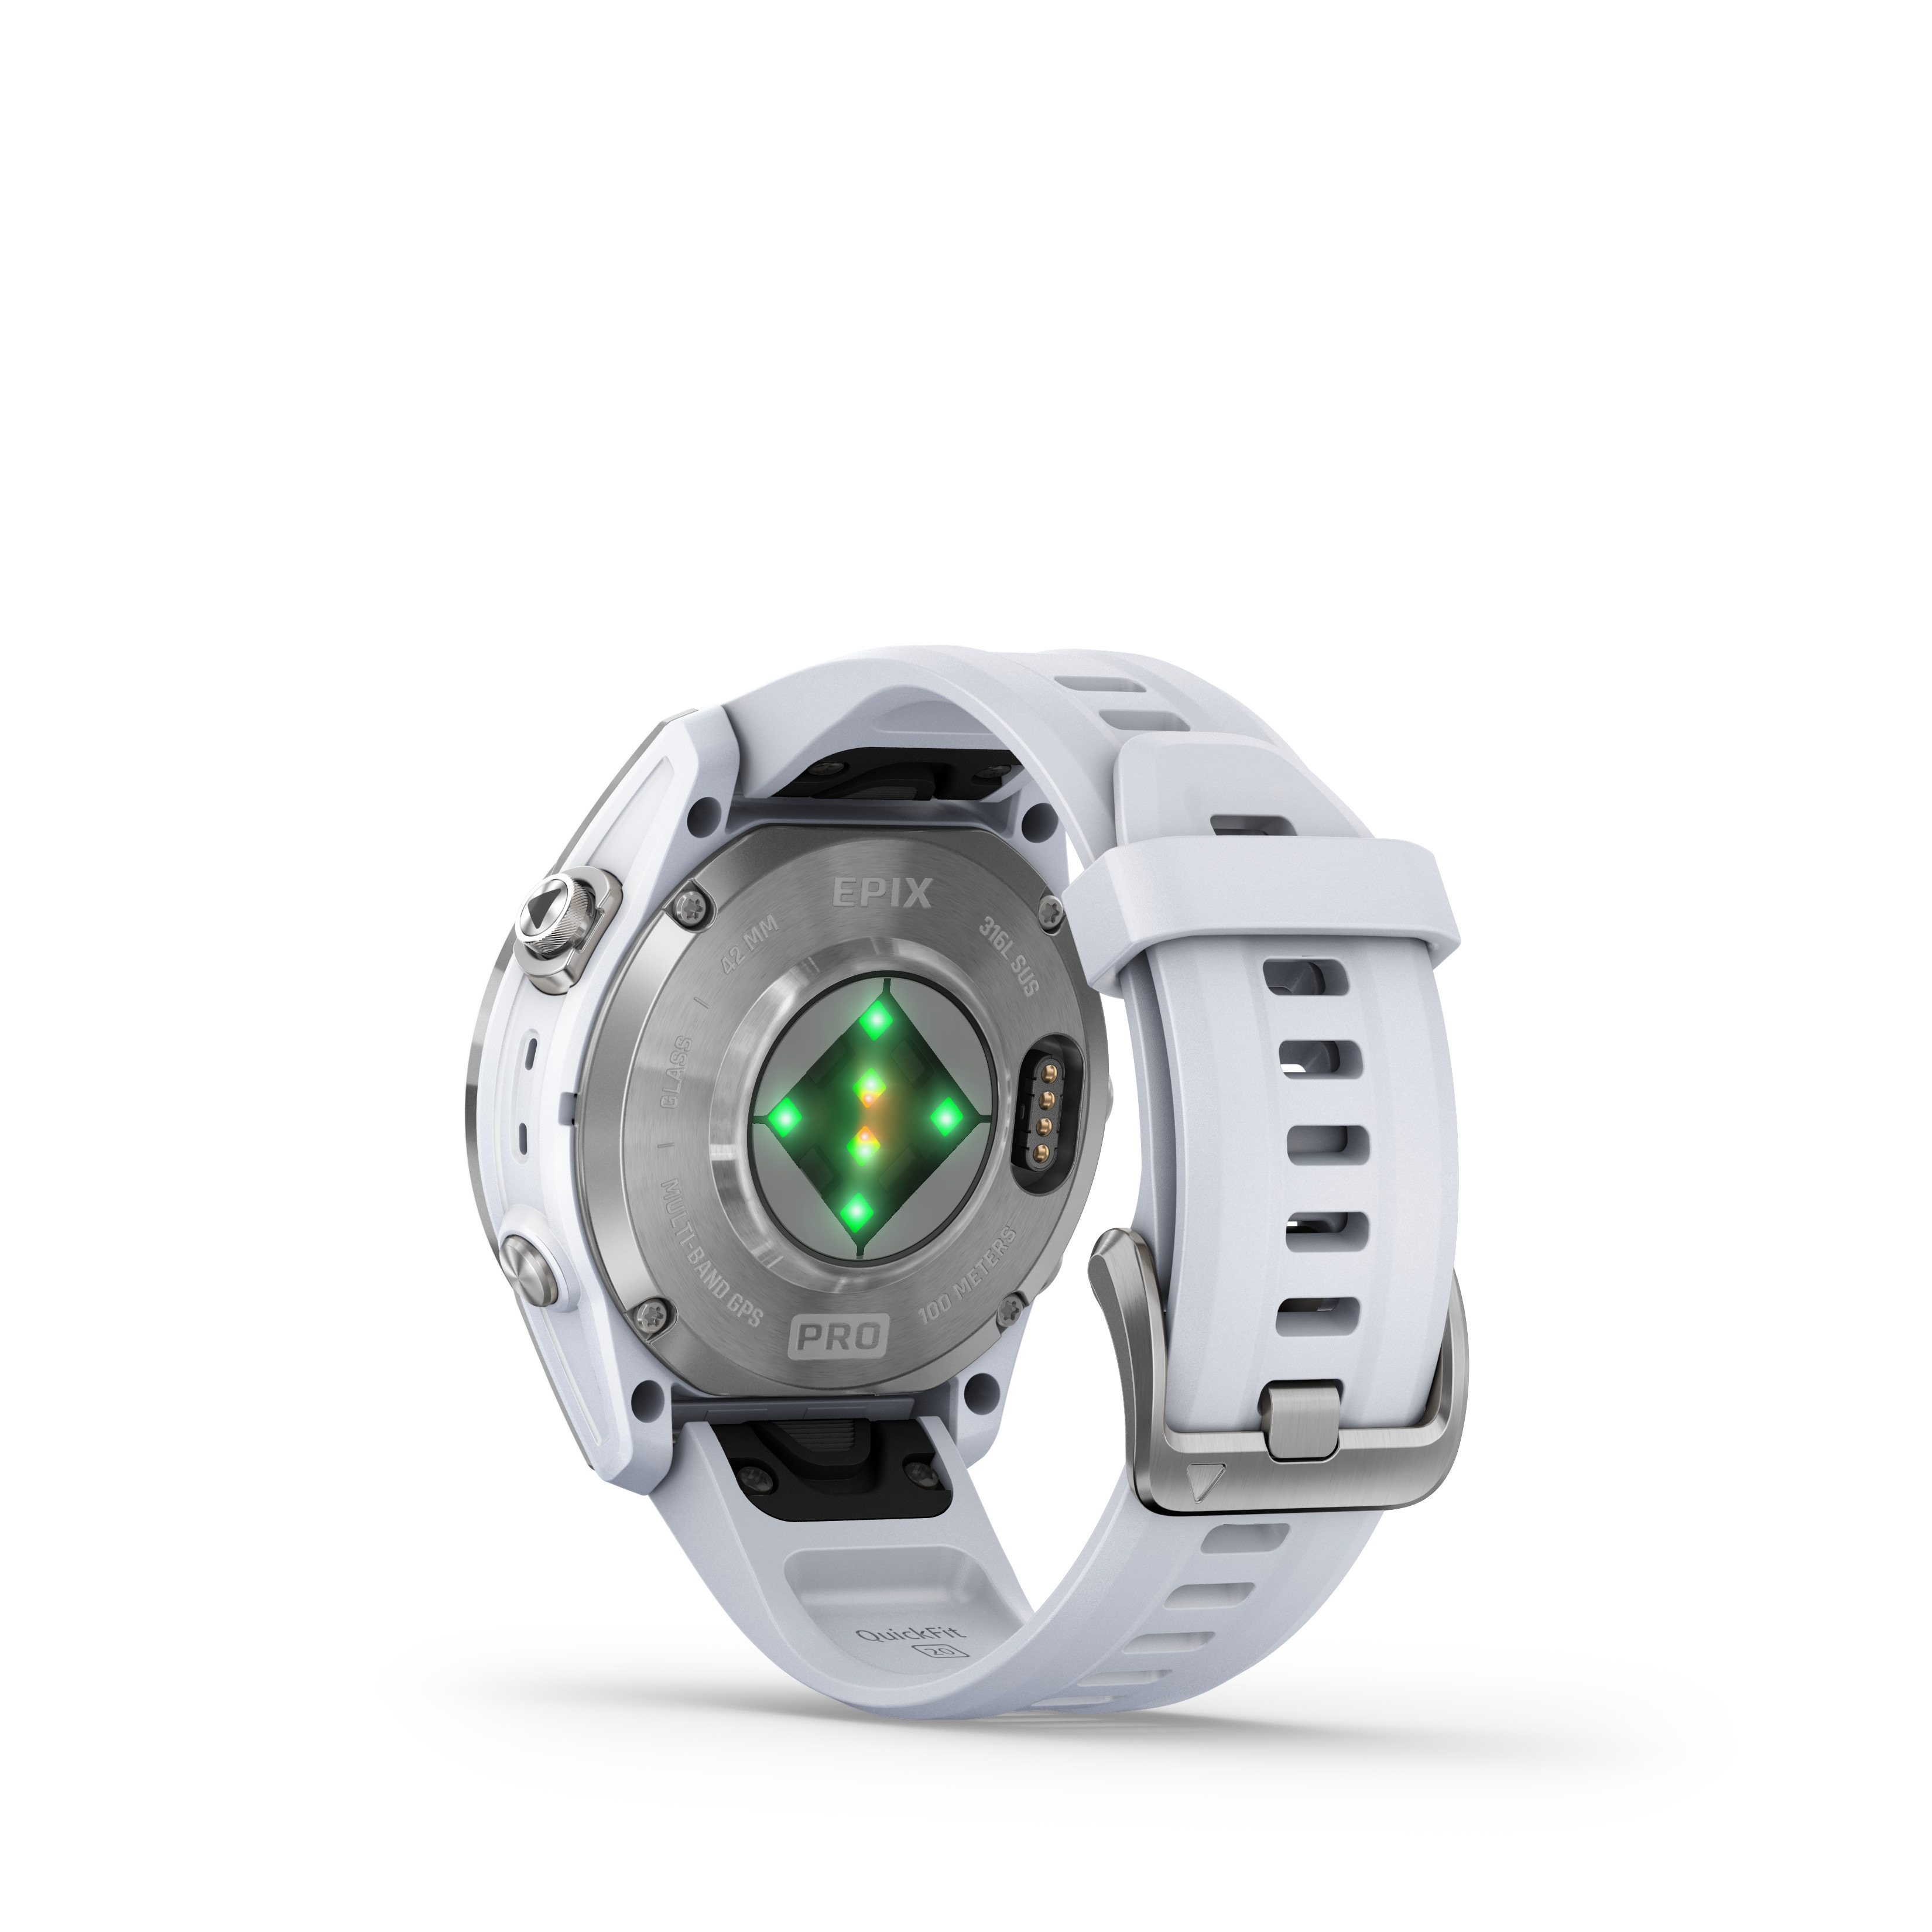 2) PRO 42mm Multisport-Smartwatch Garmin steinweiß ++ EPIX Cyberport (Gen